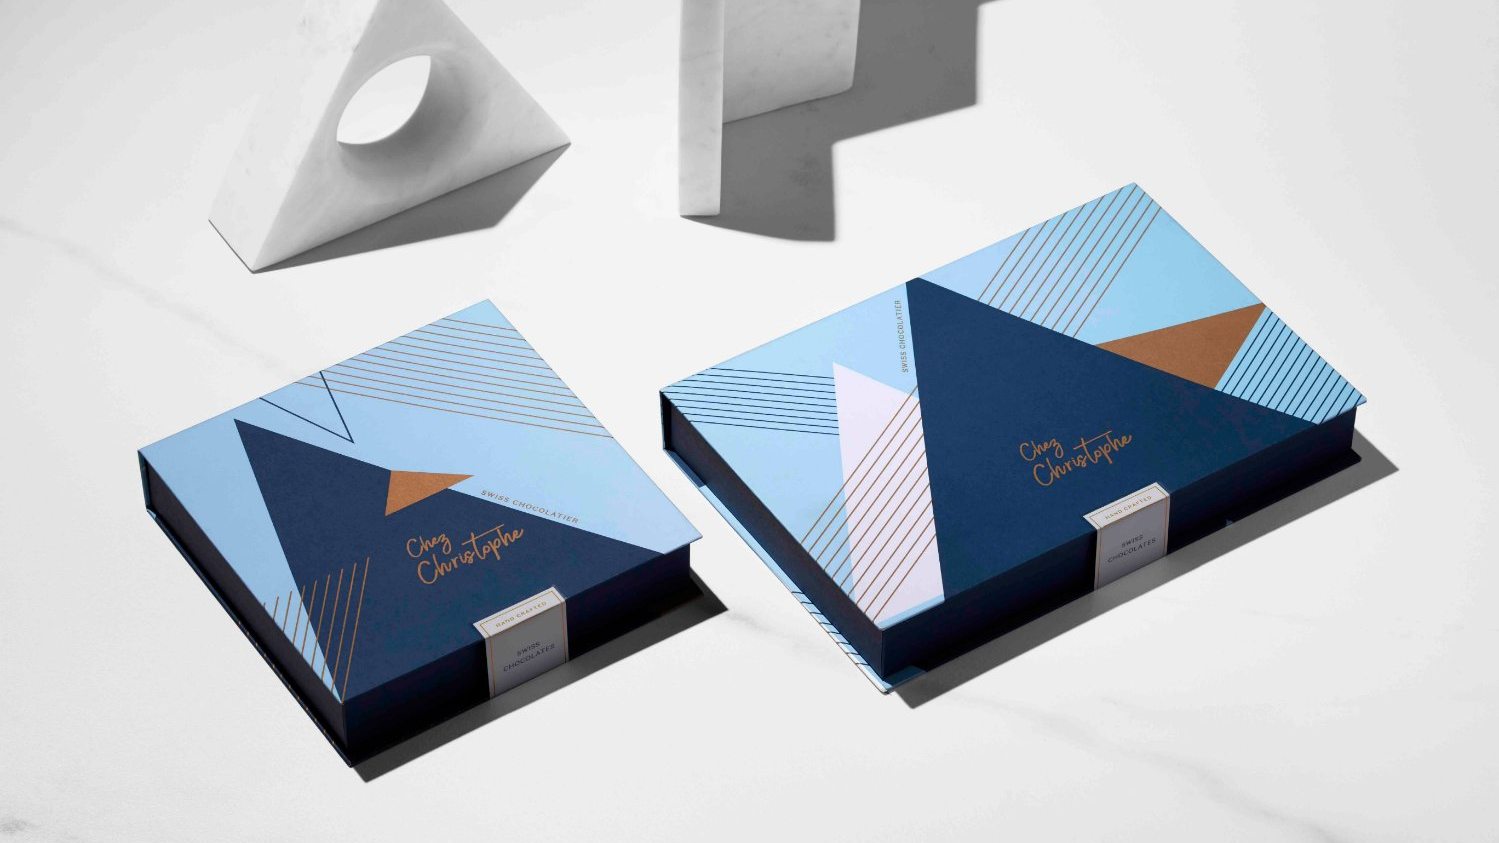 Marou for La Grande Épicerie de Paris  Dieline - Design, Branding &  Packaging Inspiration